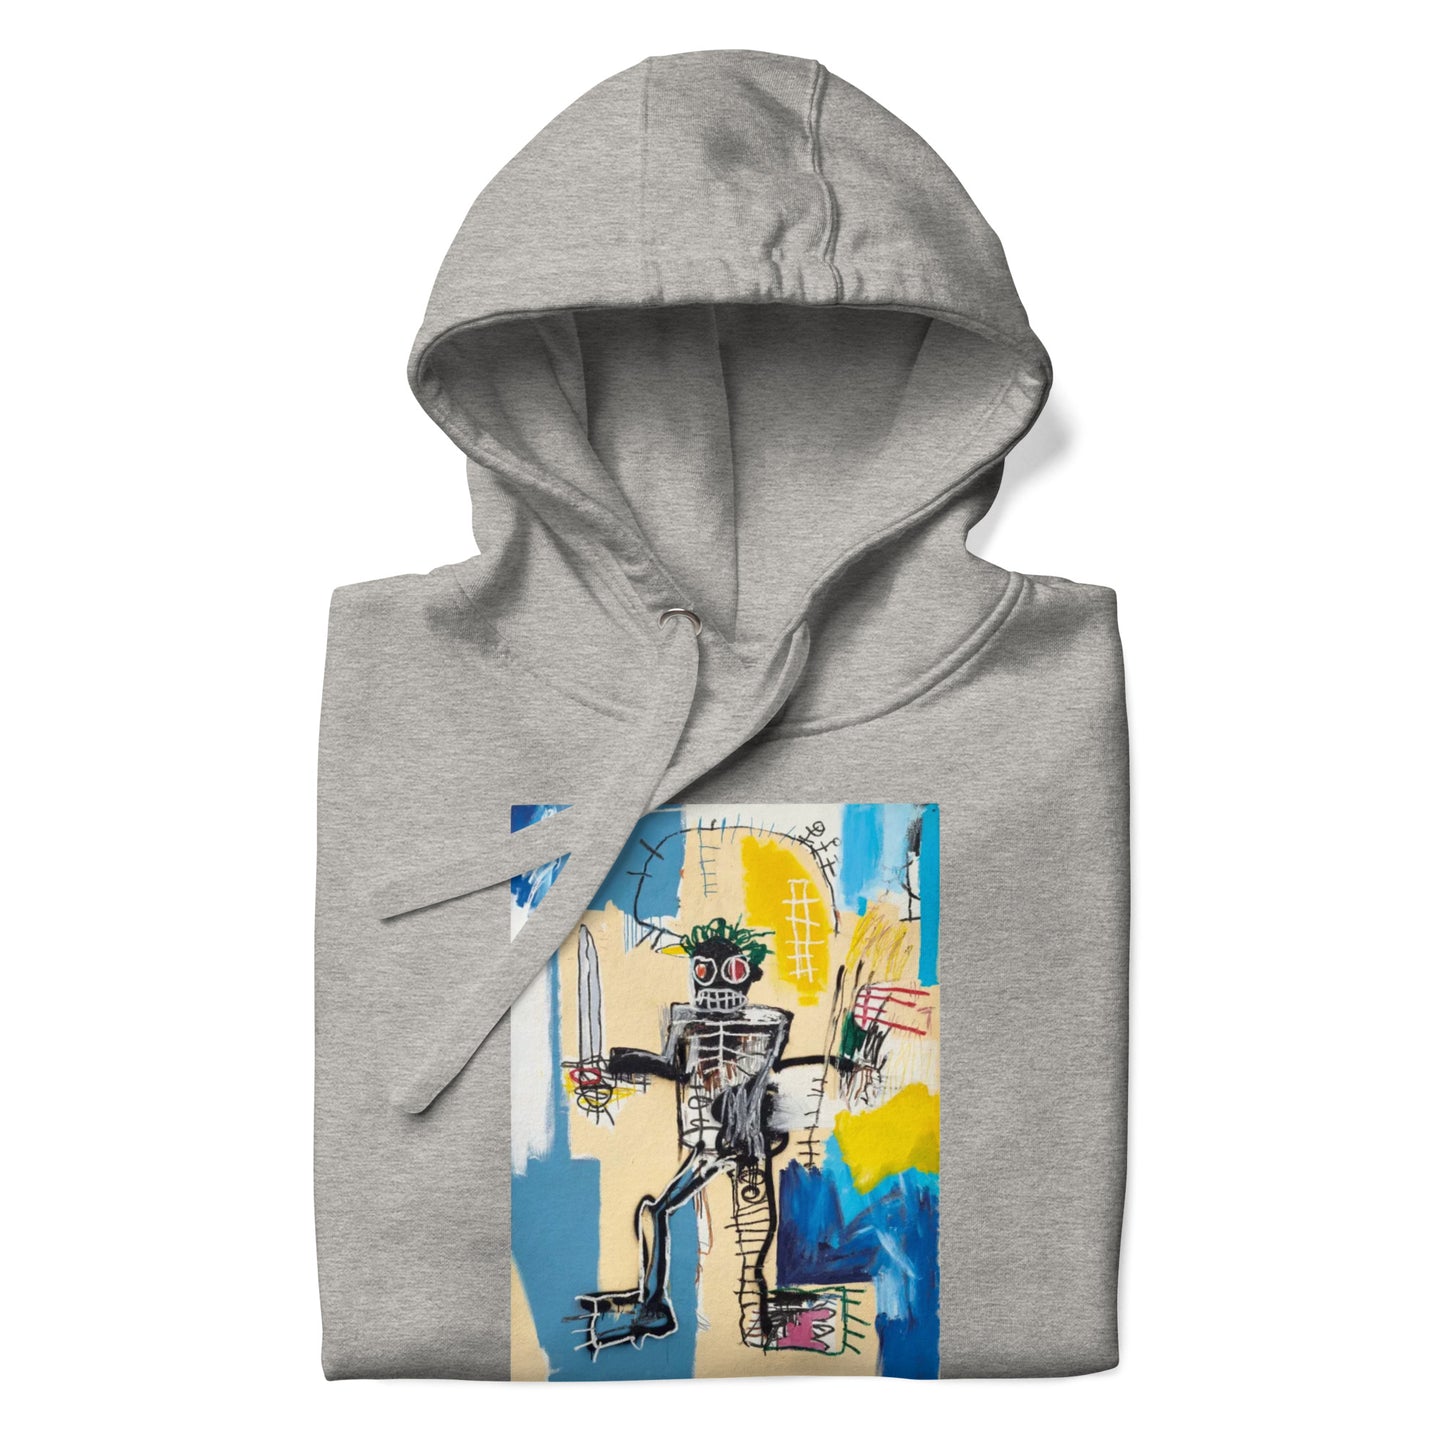 Jean-Michel Basquiat "Warrior" Artwork Printed Premium Streetwear Sweatshirt Hoodie Grey